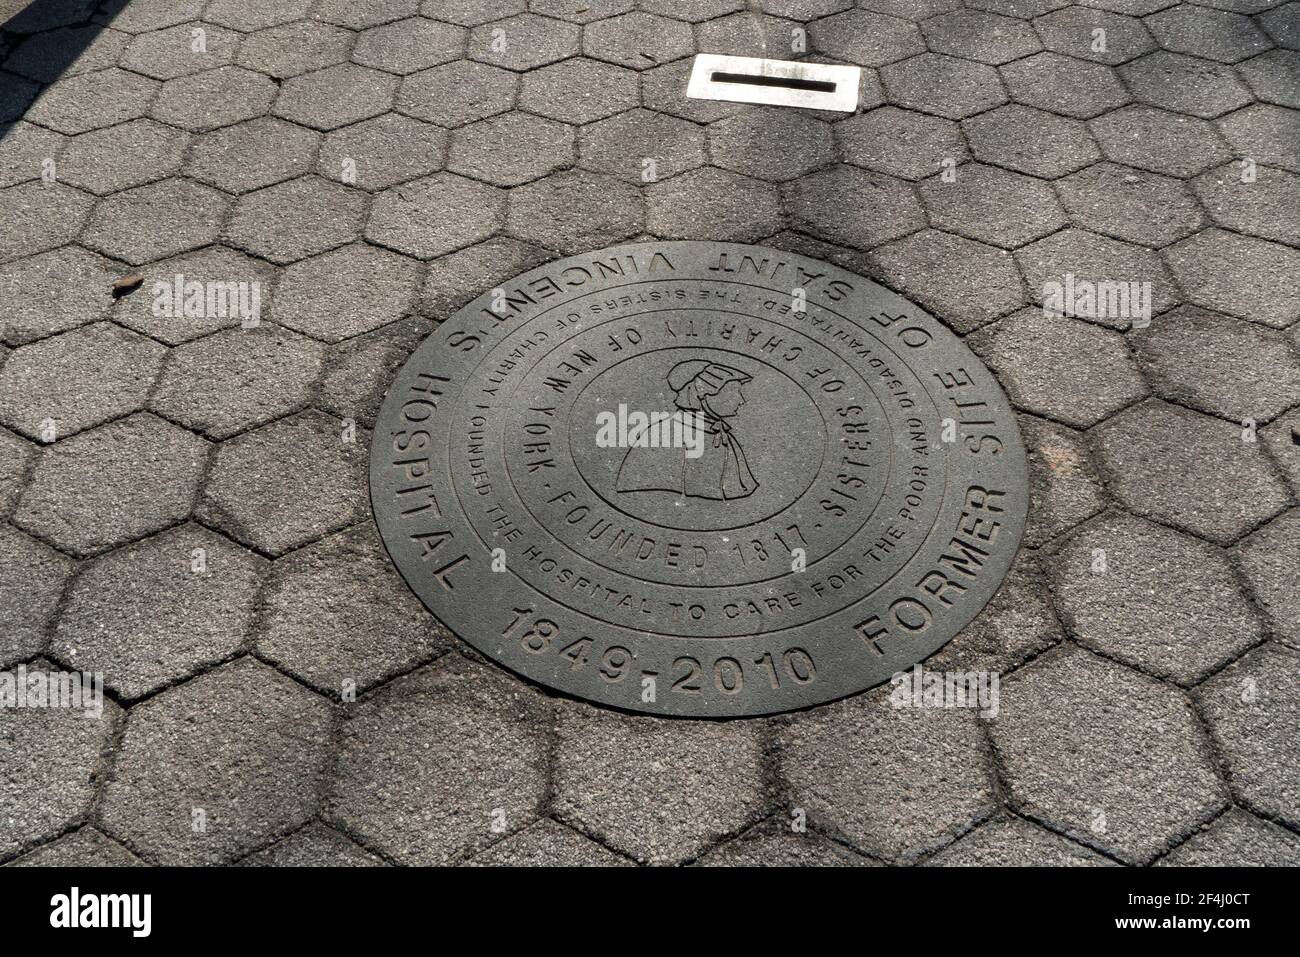 Une plaque dans un petit parc de Greenwich Village, Manhattan, New York, indique que le parc était autrefois le site de l'hôpital St. Vincent. Banque D'Images